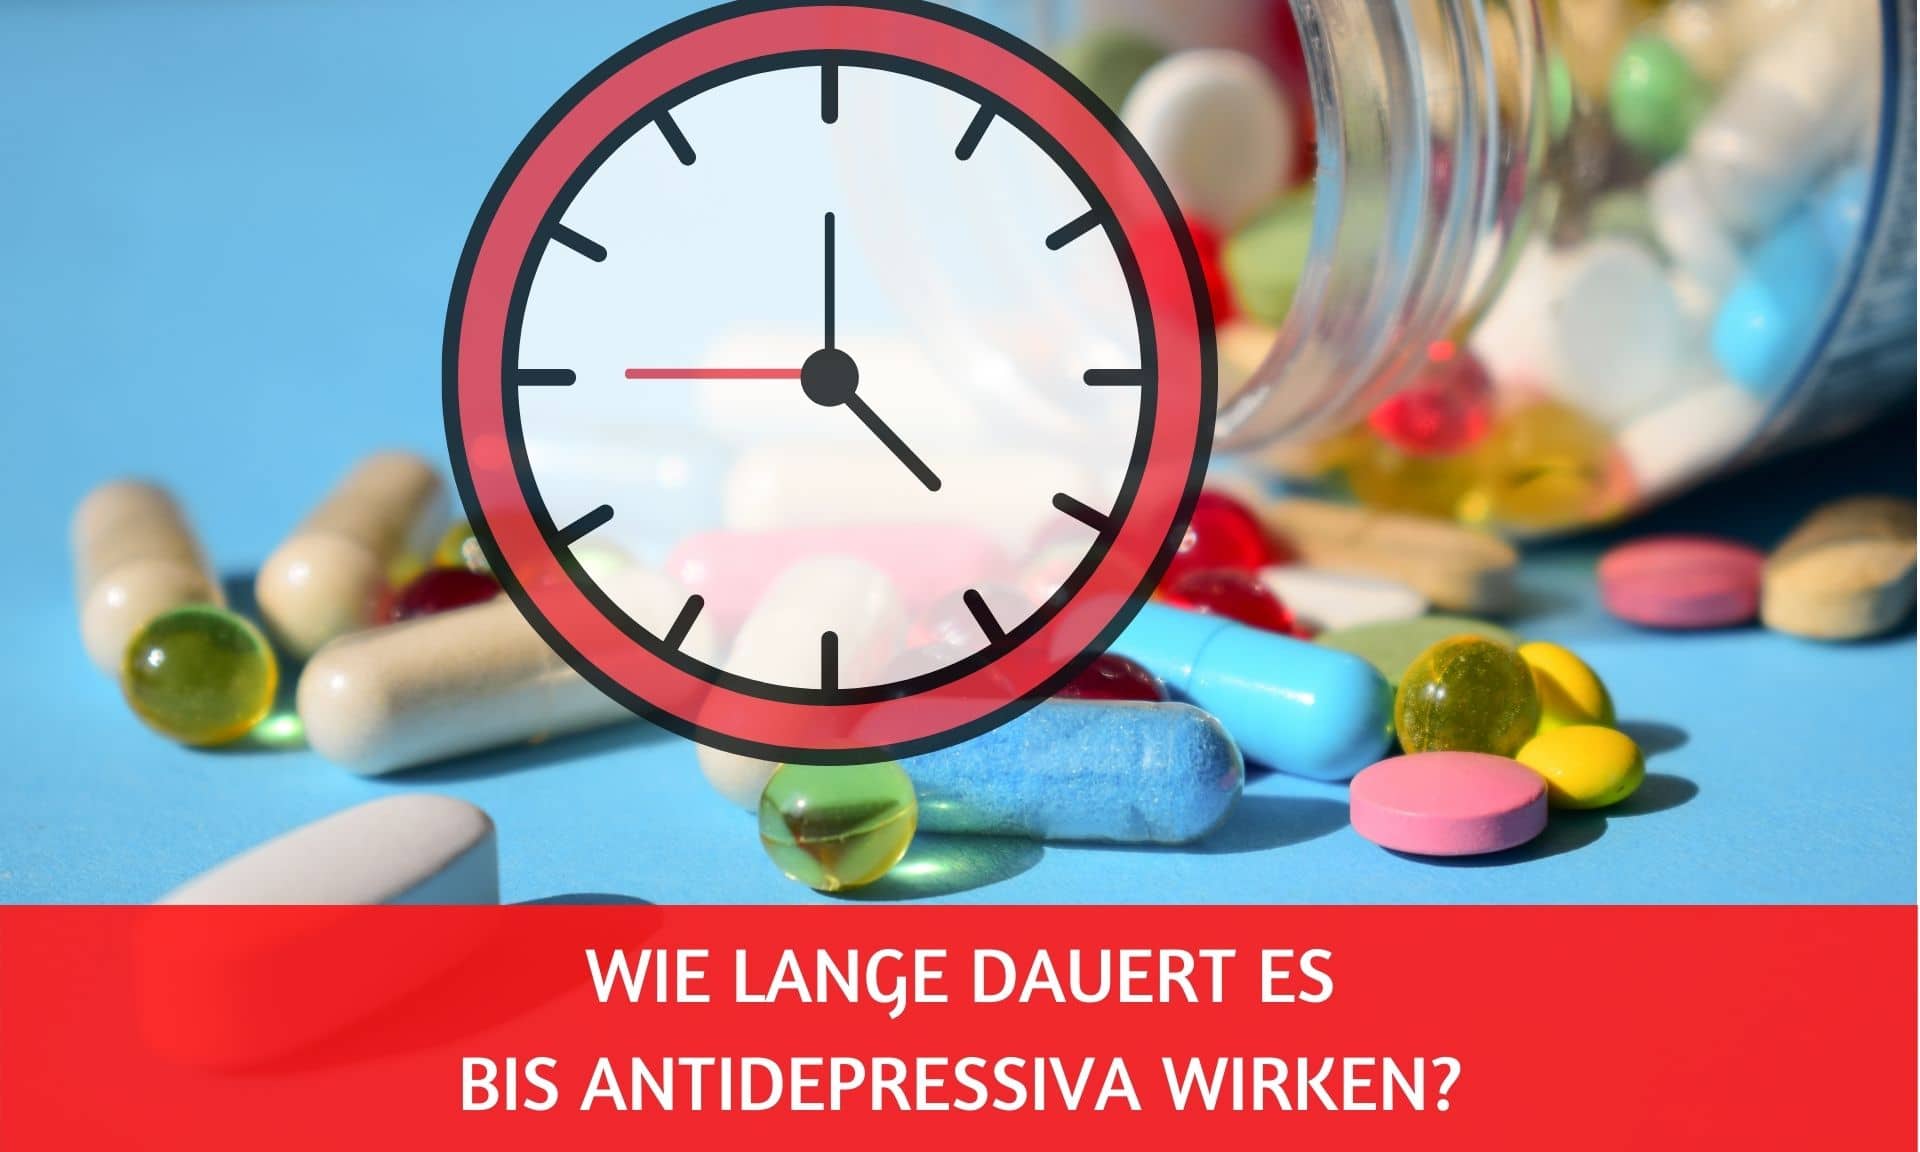 Wie lange dauert es bis eine Erhöhung von Antidepressiva wirkt?